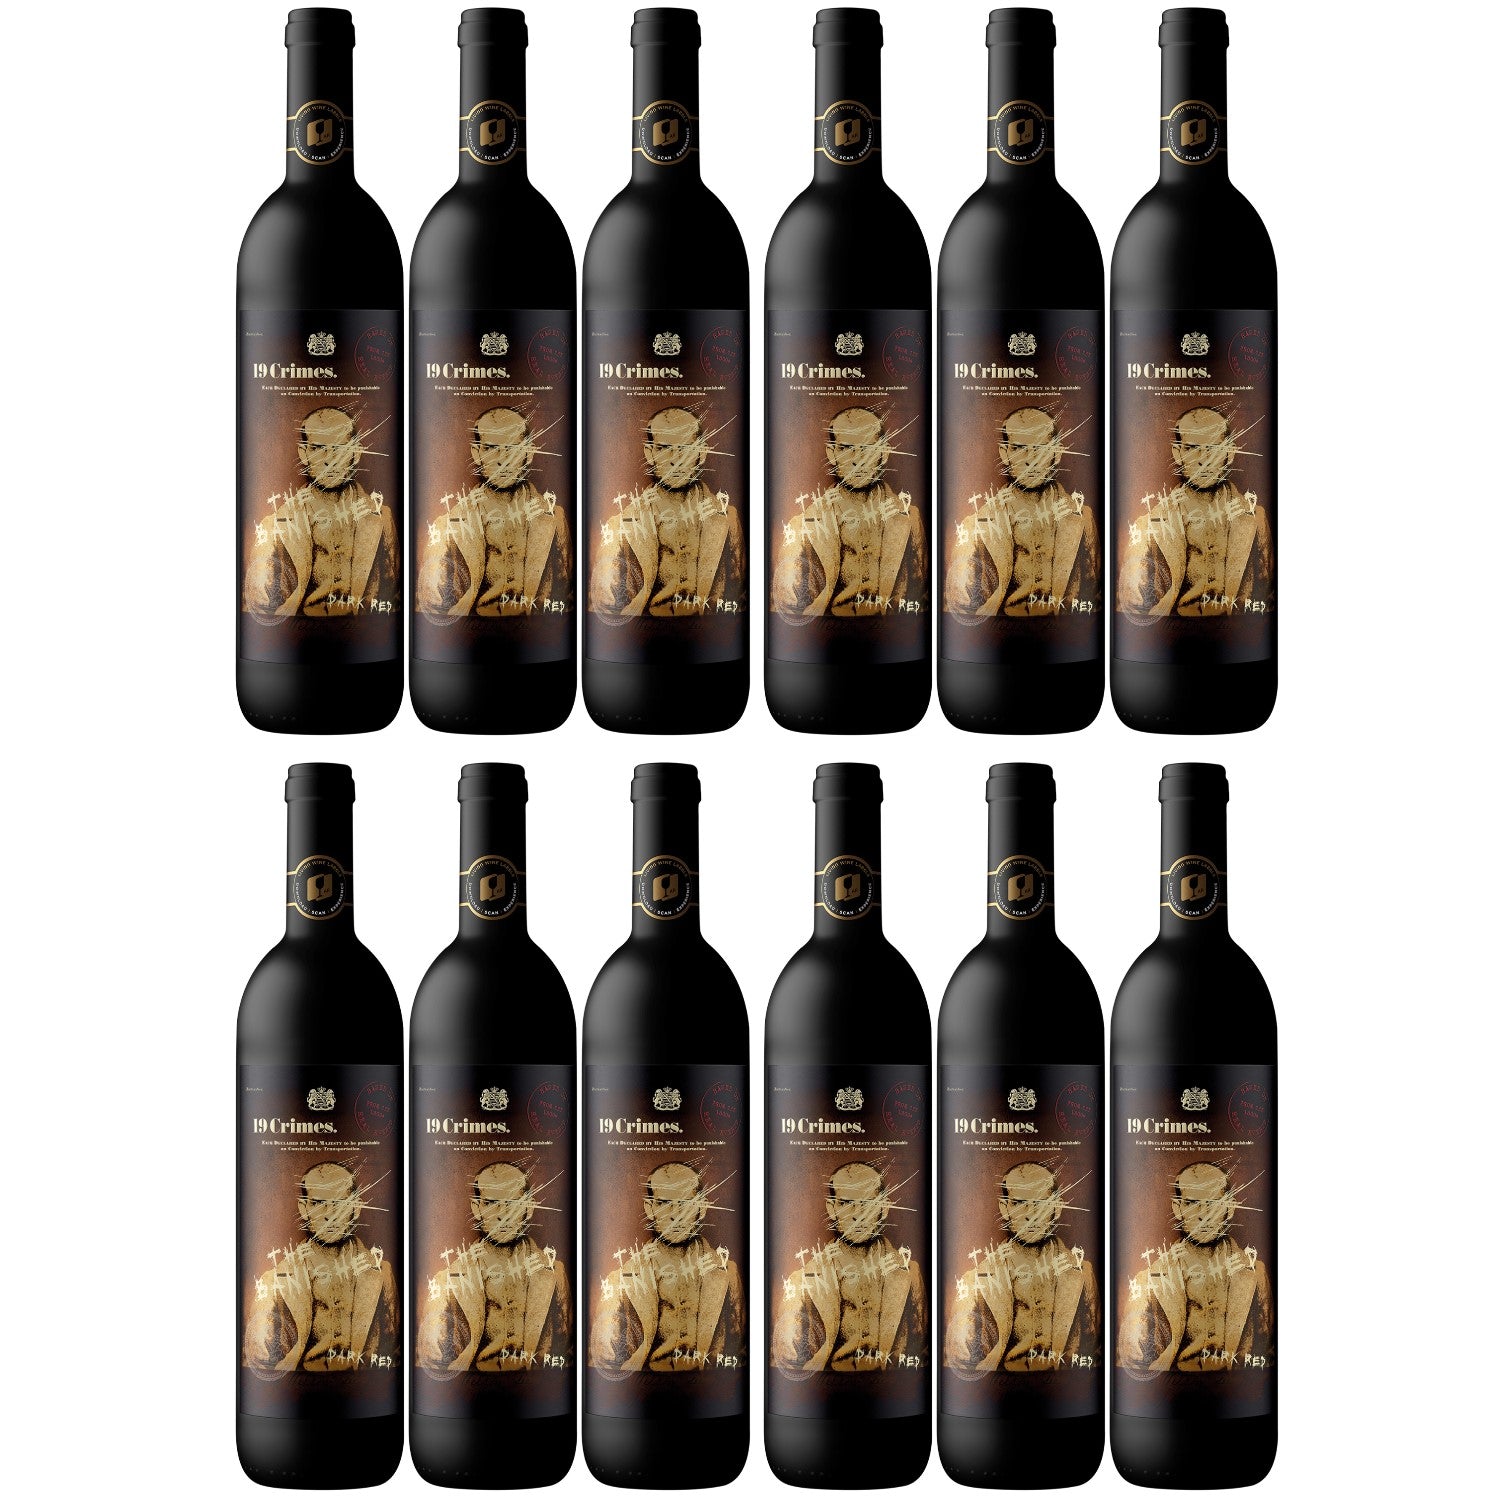 19 Crimes The Banished Cabernet Sauvignon Grenache Shiraz Rotwein Wein Trocken Australien (12 x 0.75l) - Versanel - Wein